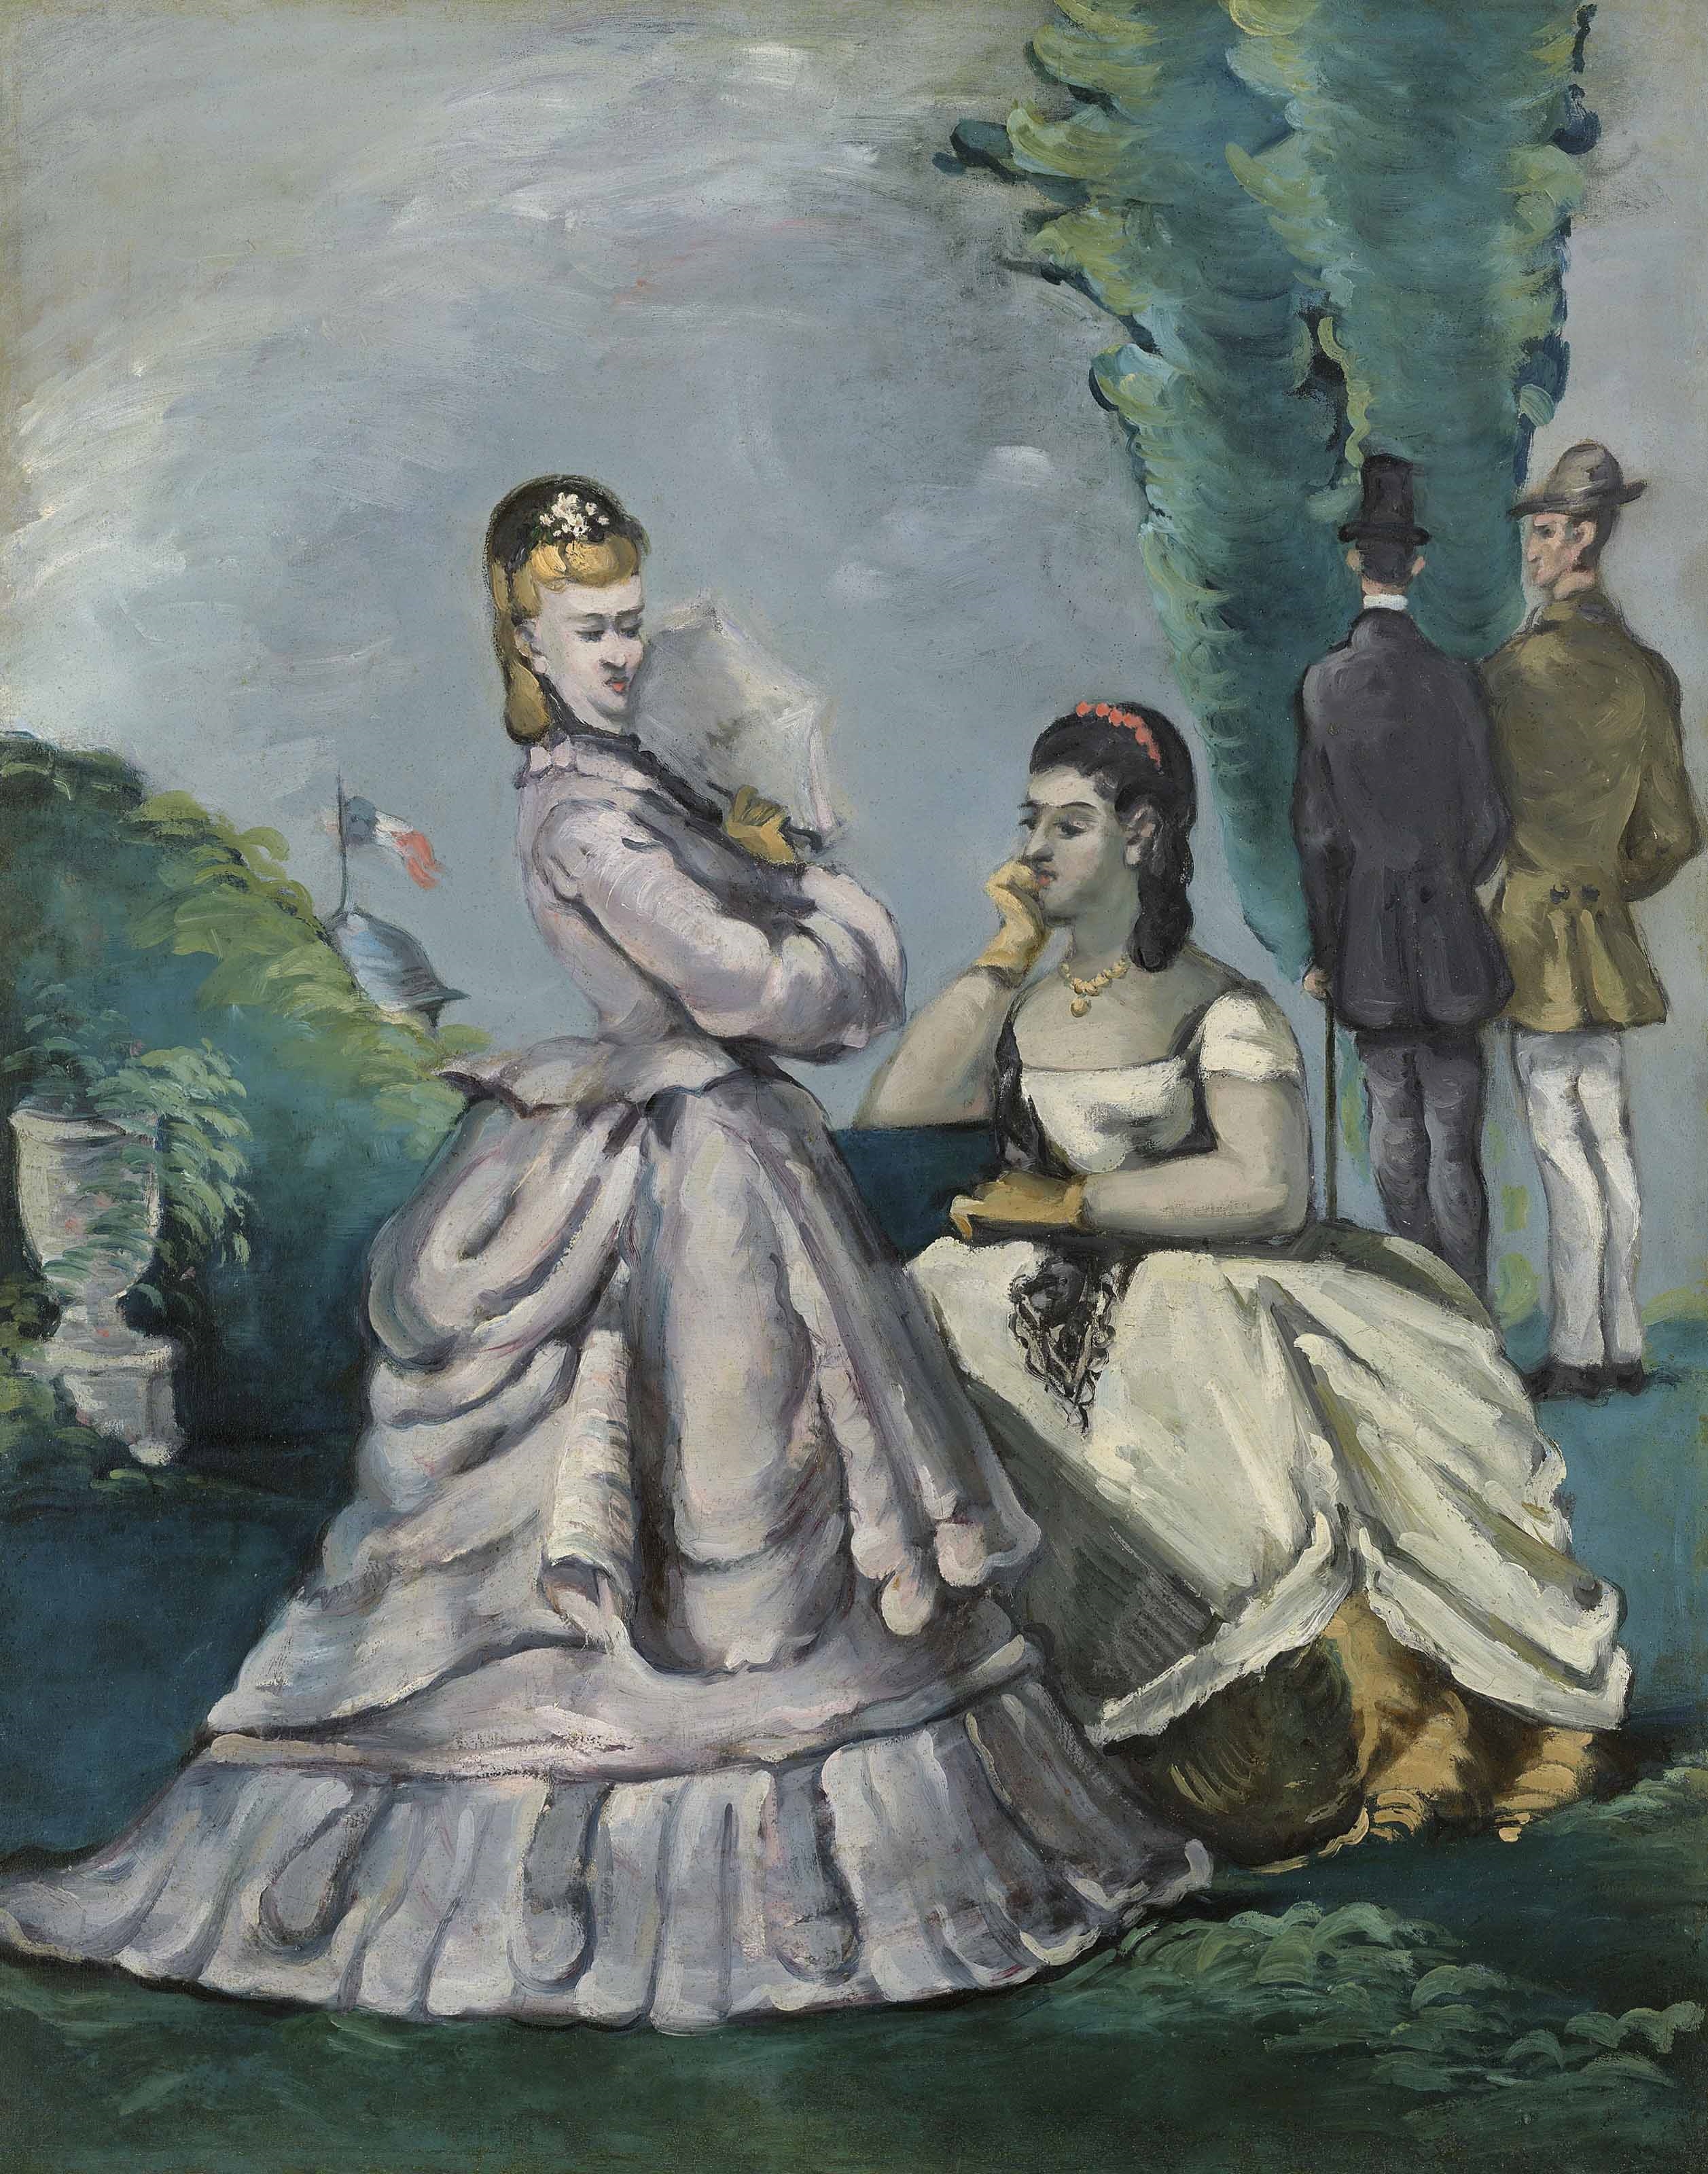 La conversation by Paul Cézanne, 1870-1871